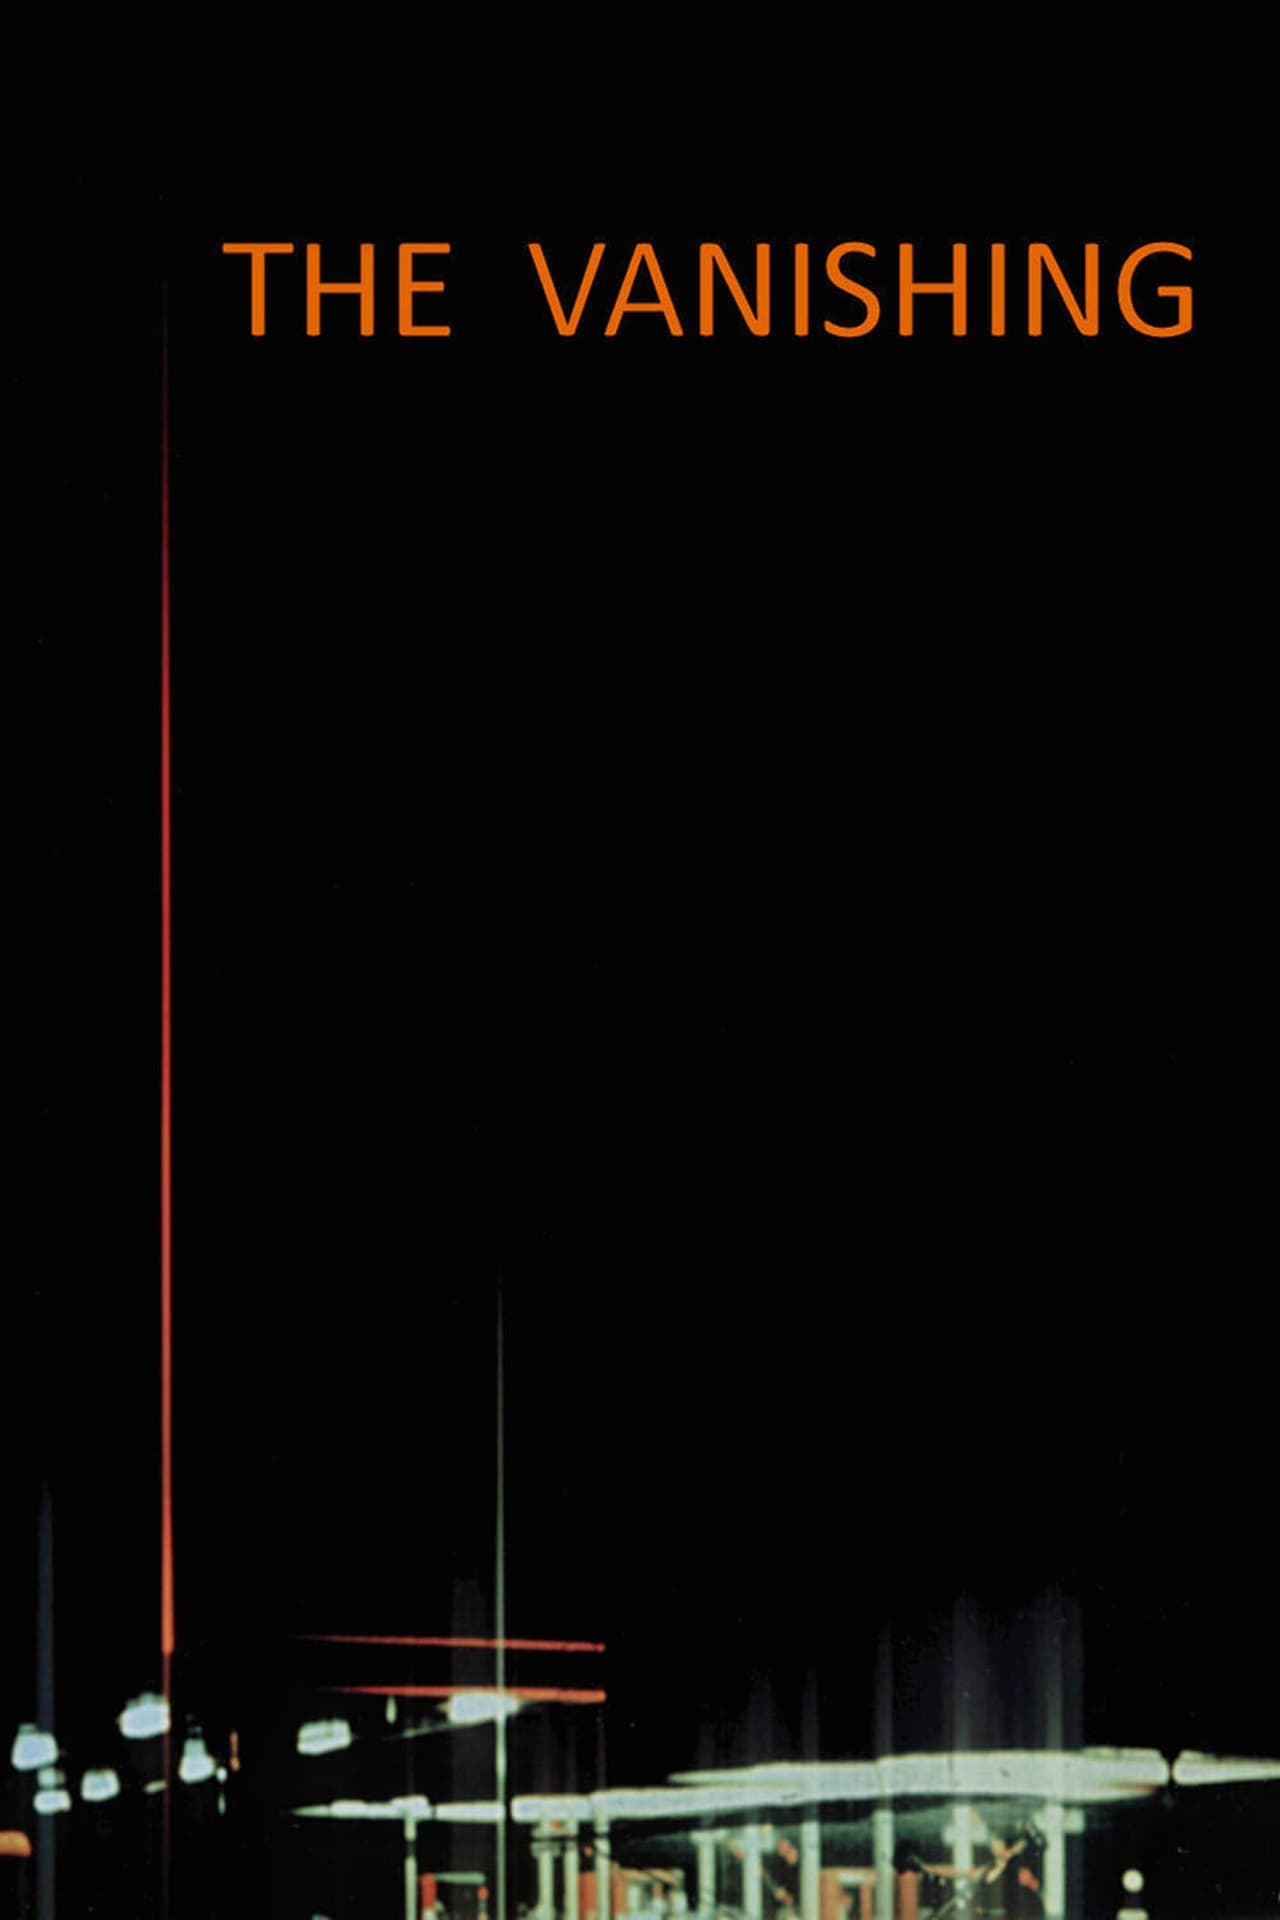 The Vanishing poster